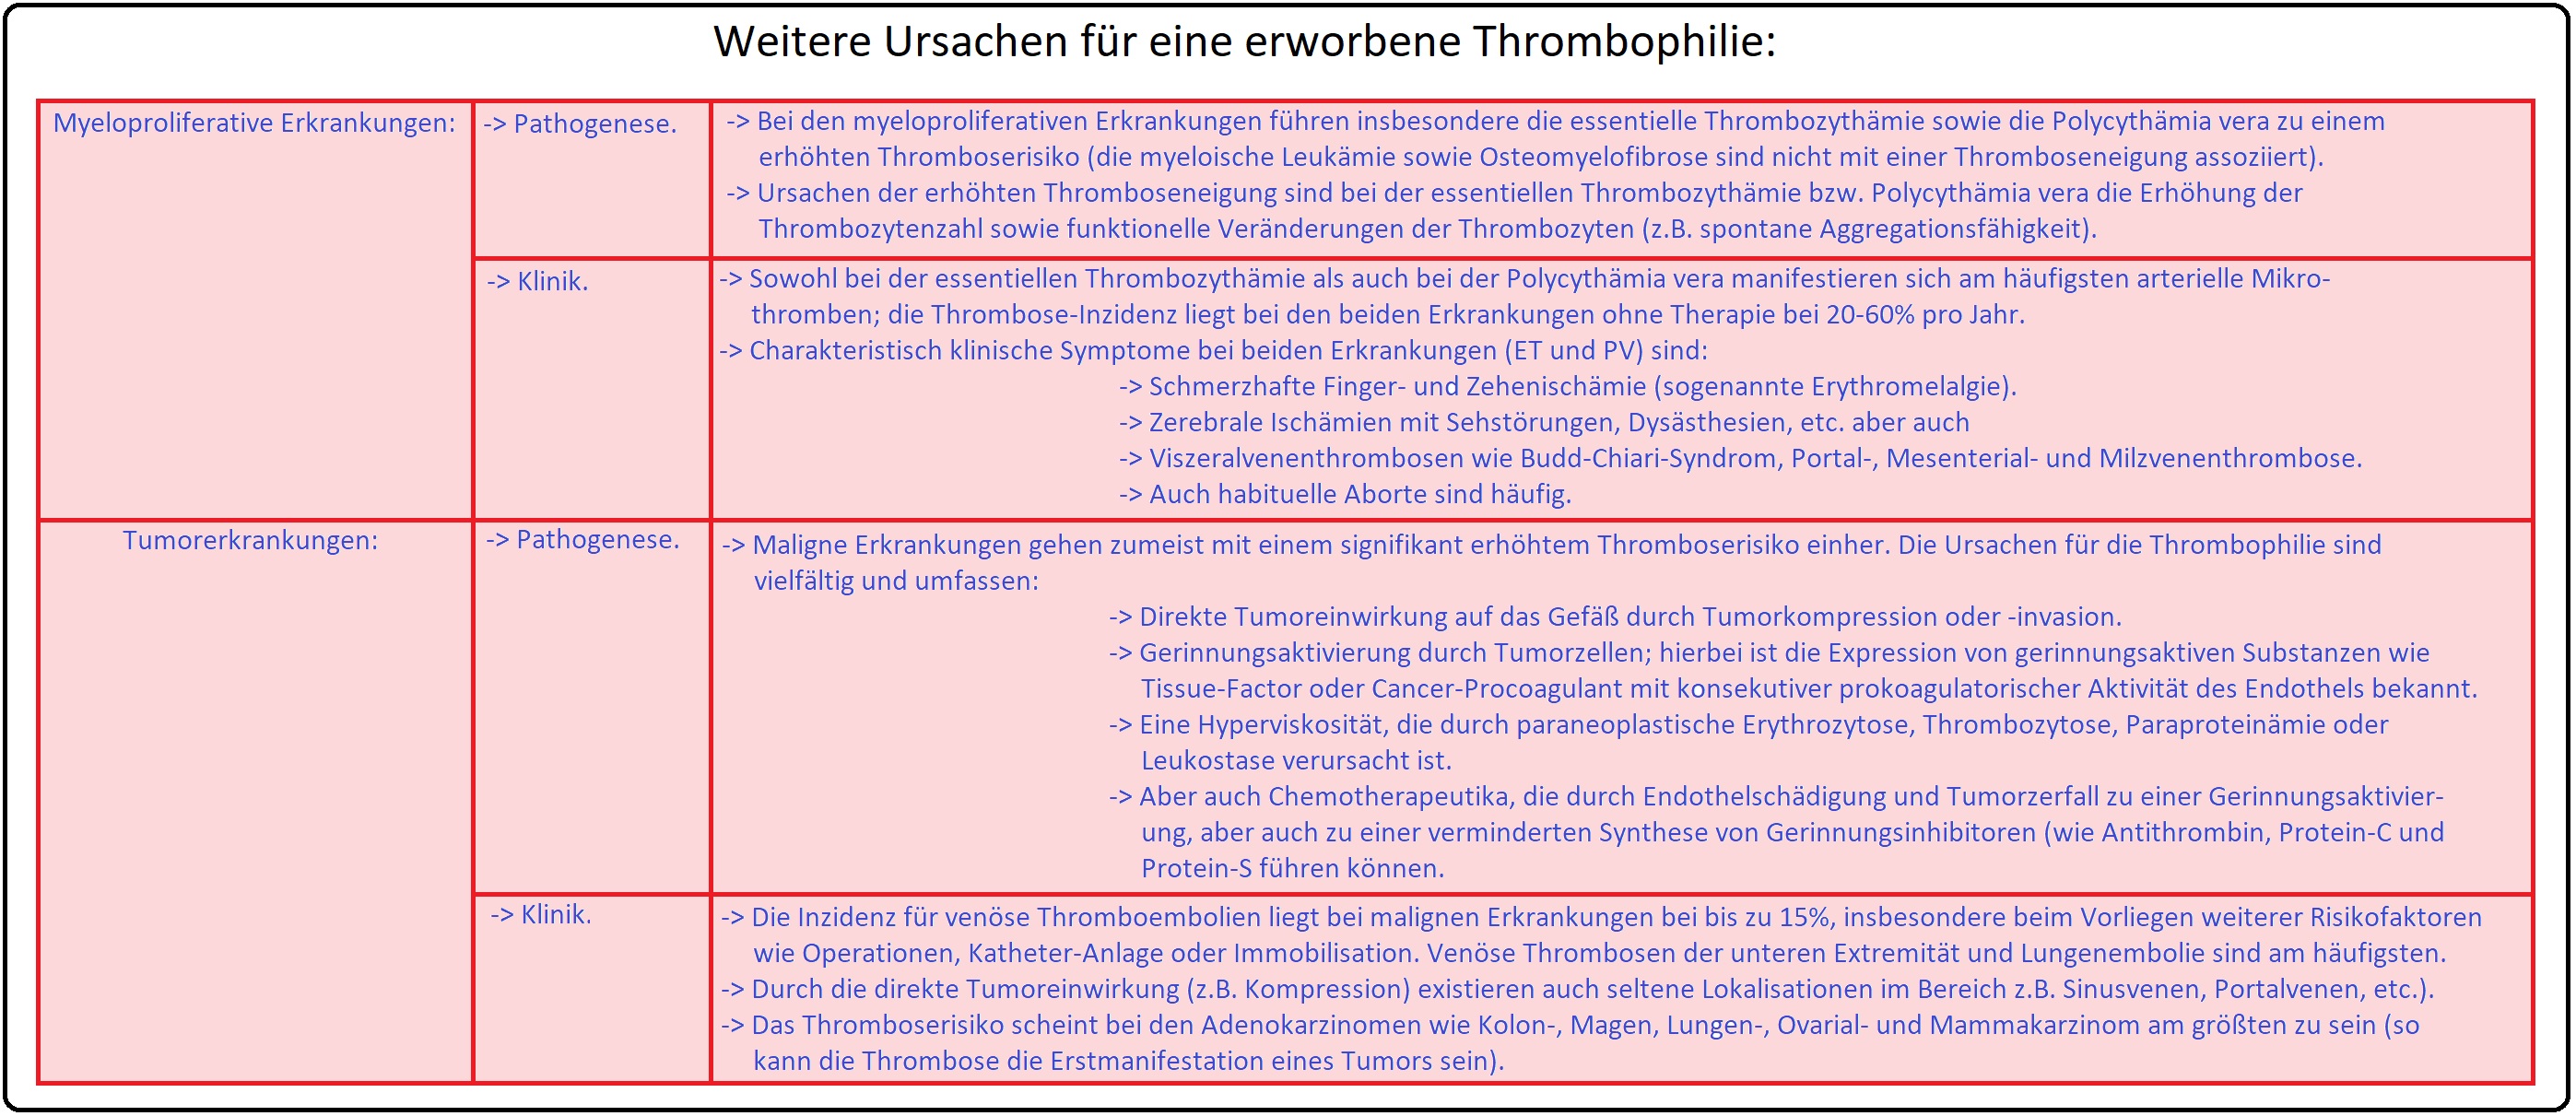 1105 Weitere Ursachen für eine erworbene Thrombophilie